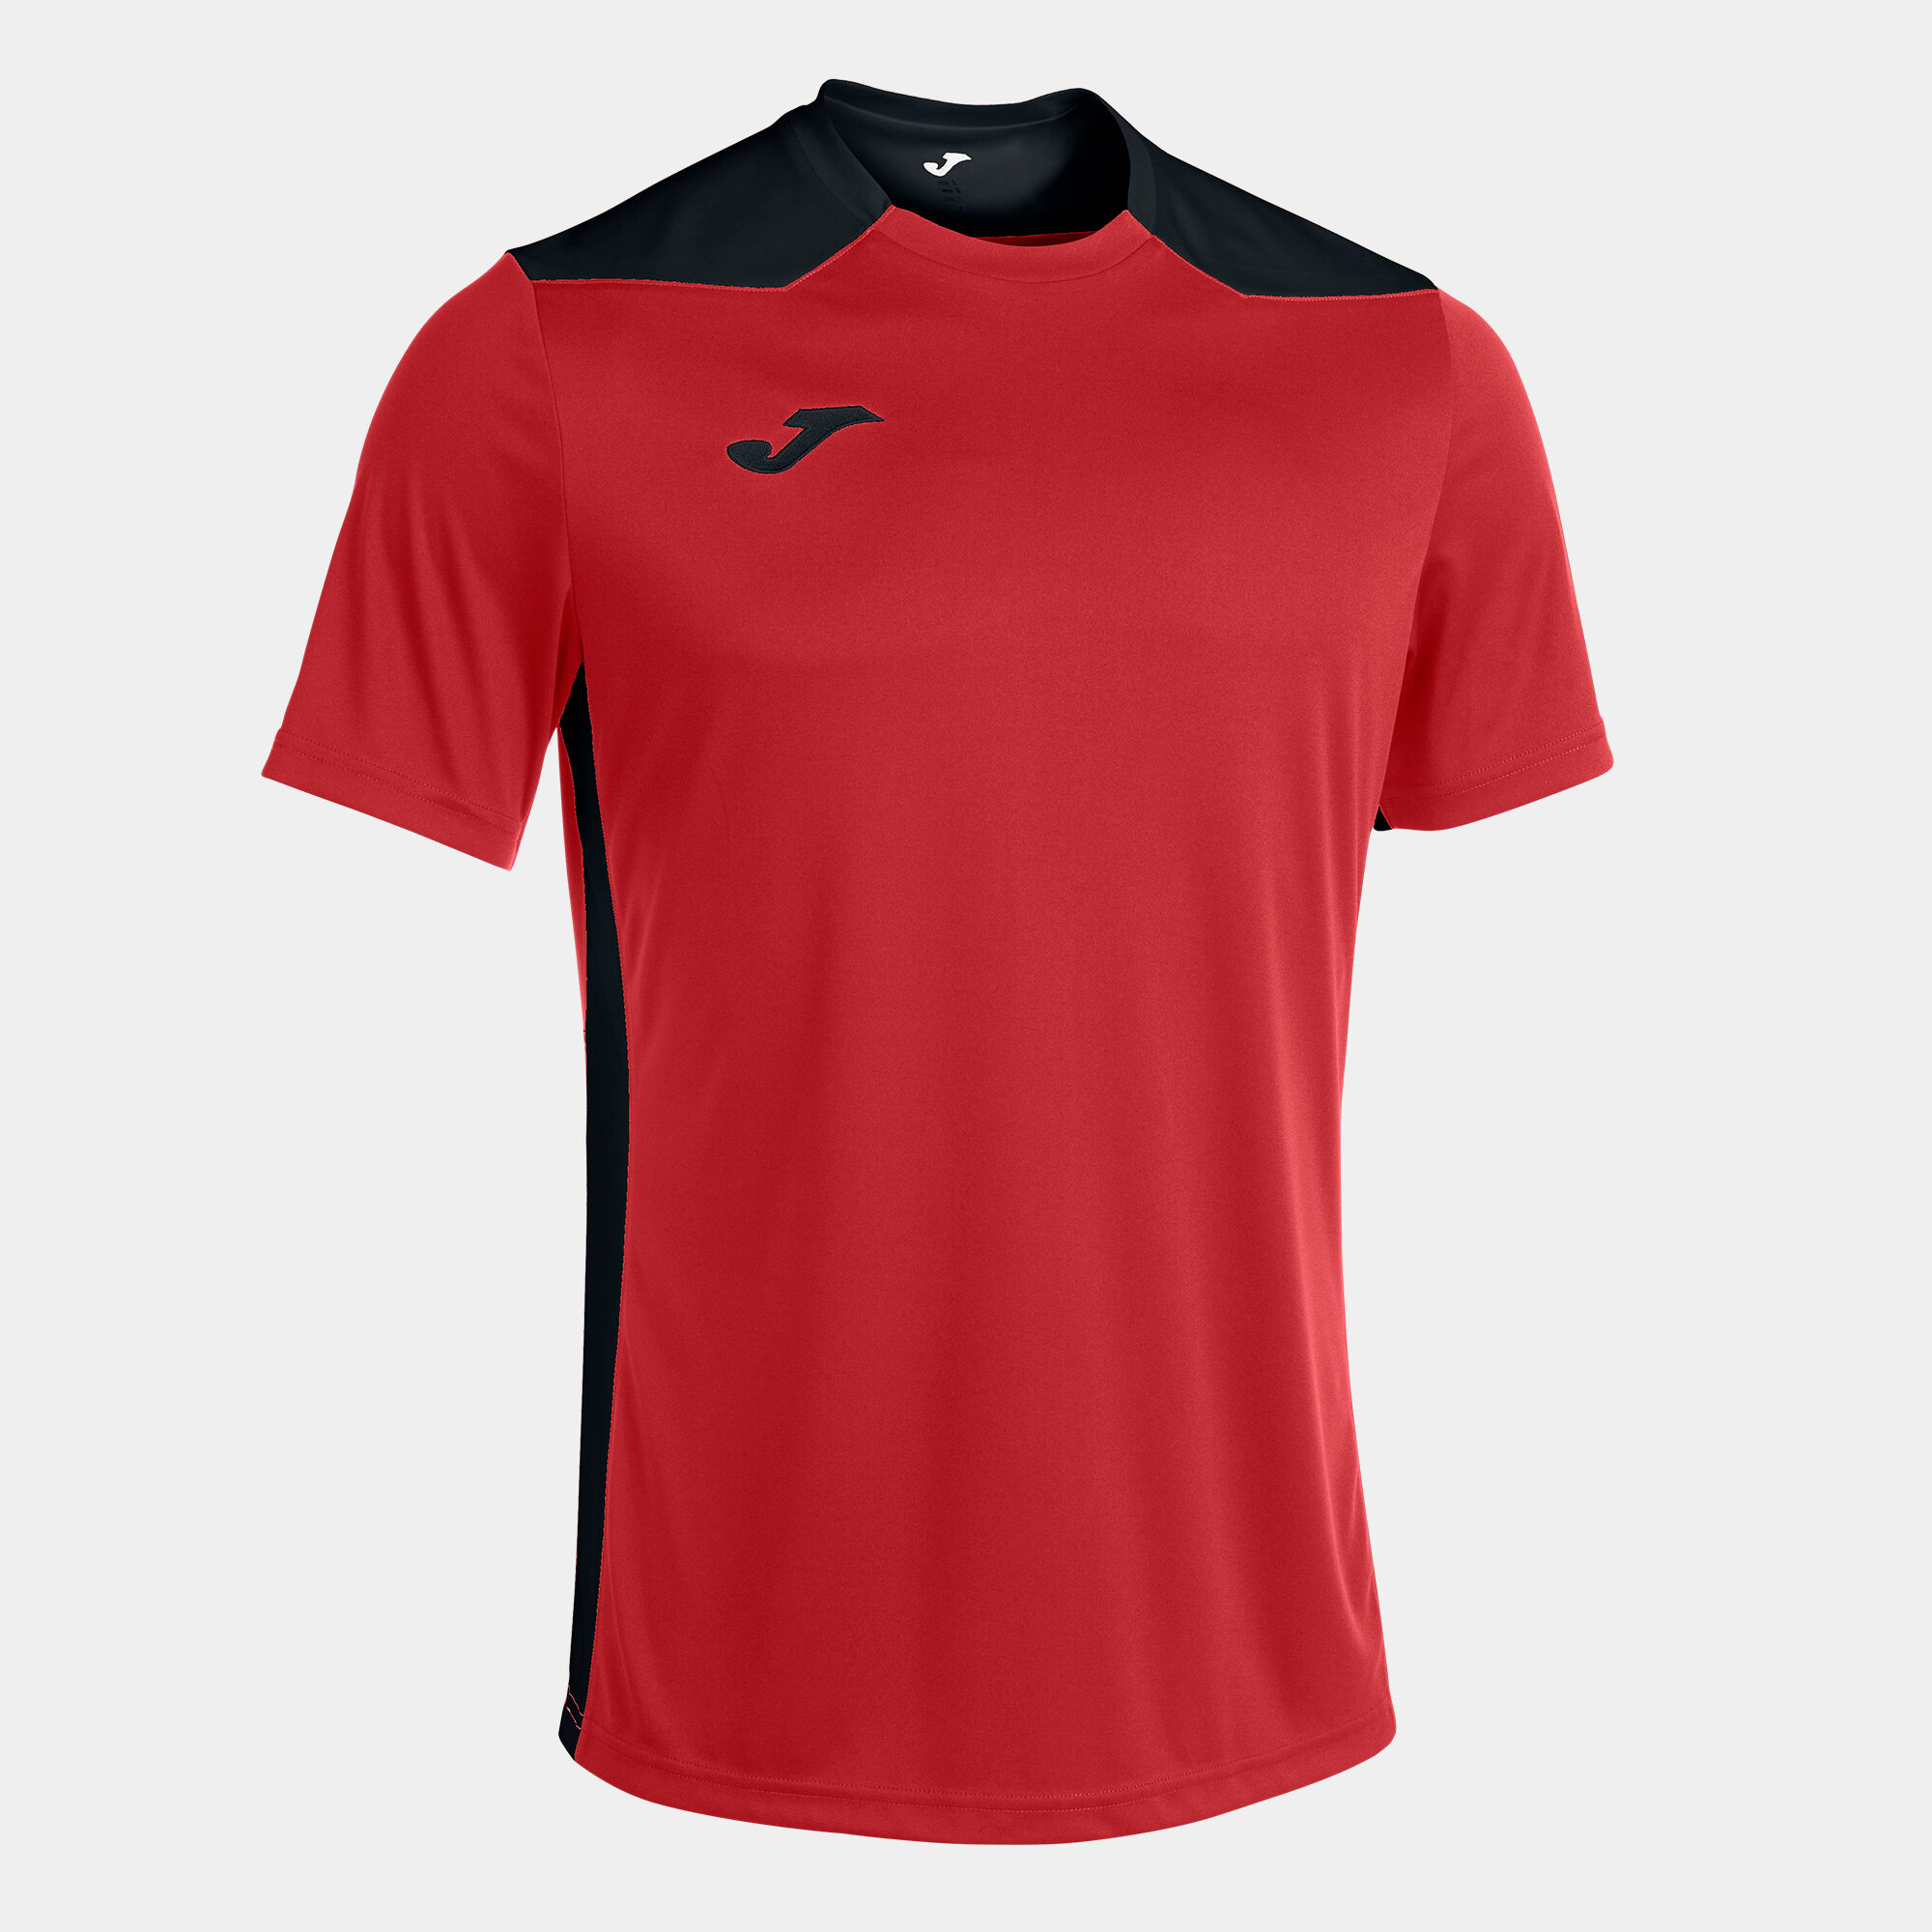 T-shirt manga curta homem Championship VI vermelho preto